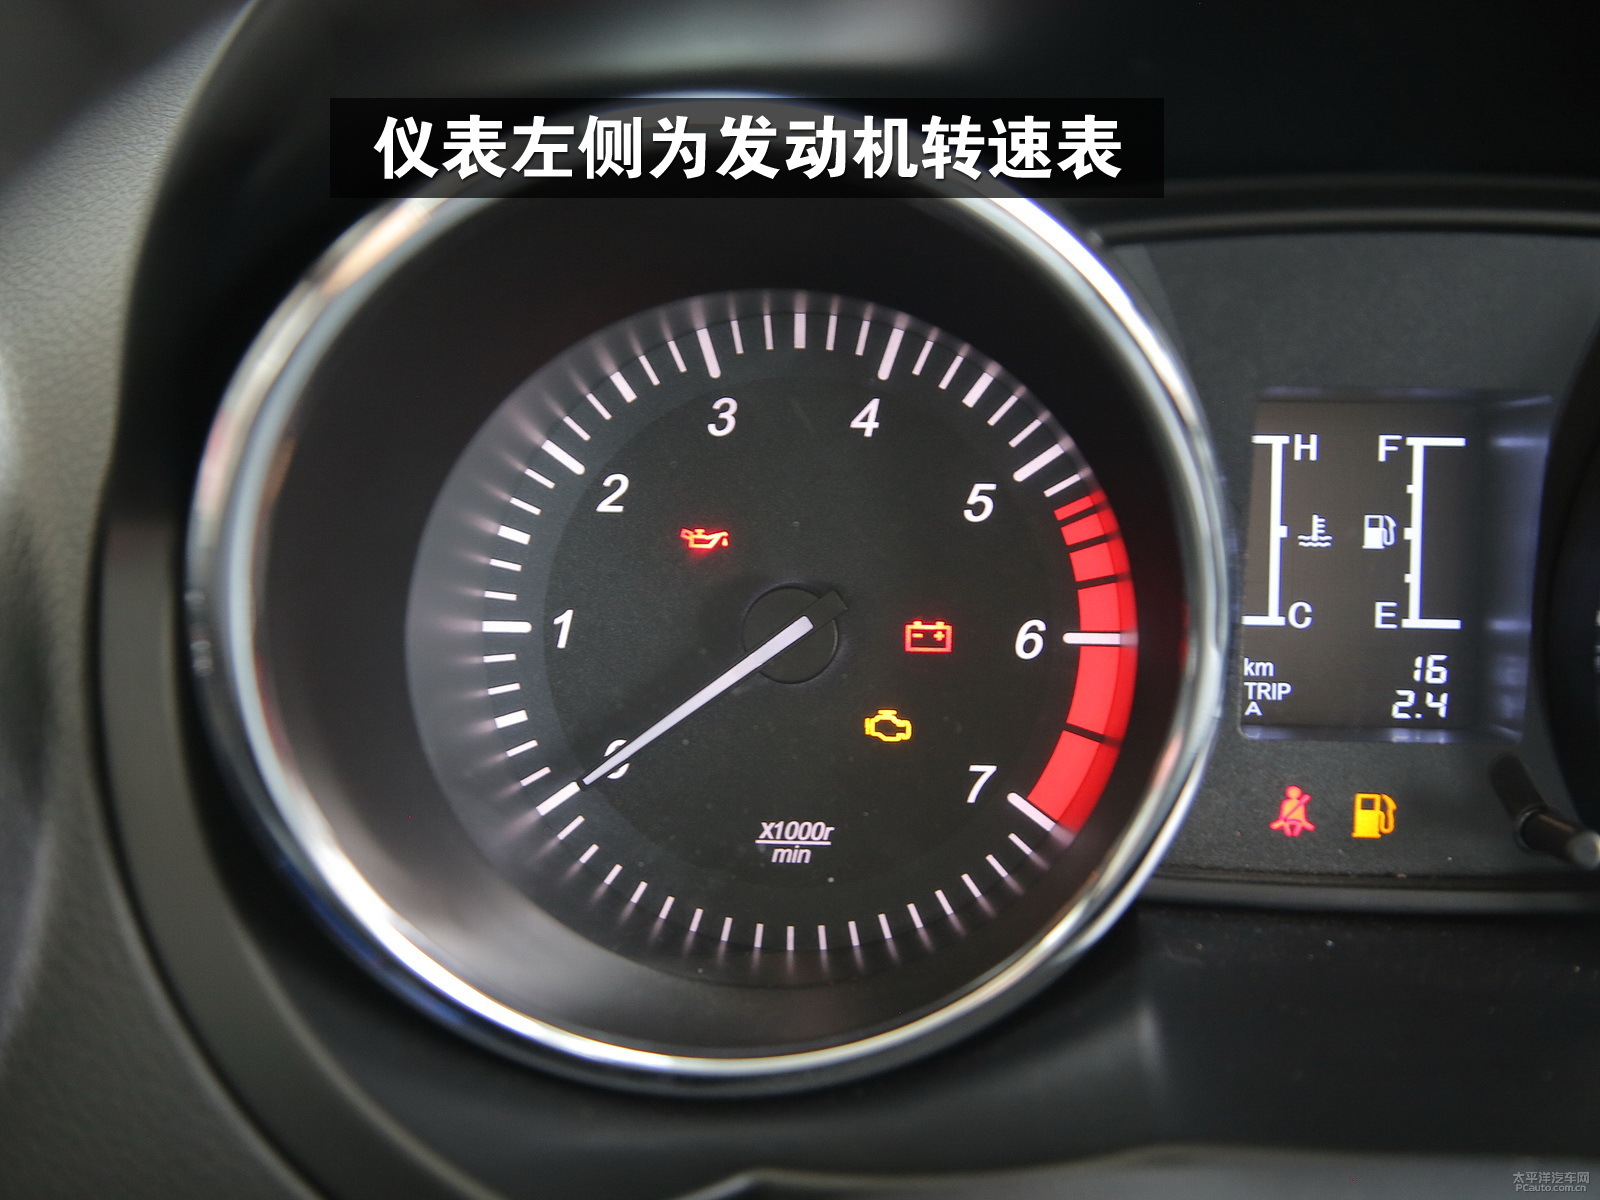 发动机转速表上能显示一些工作状态指示灯等.